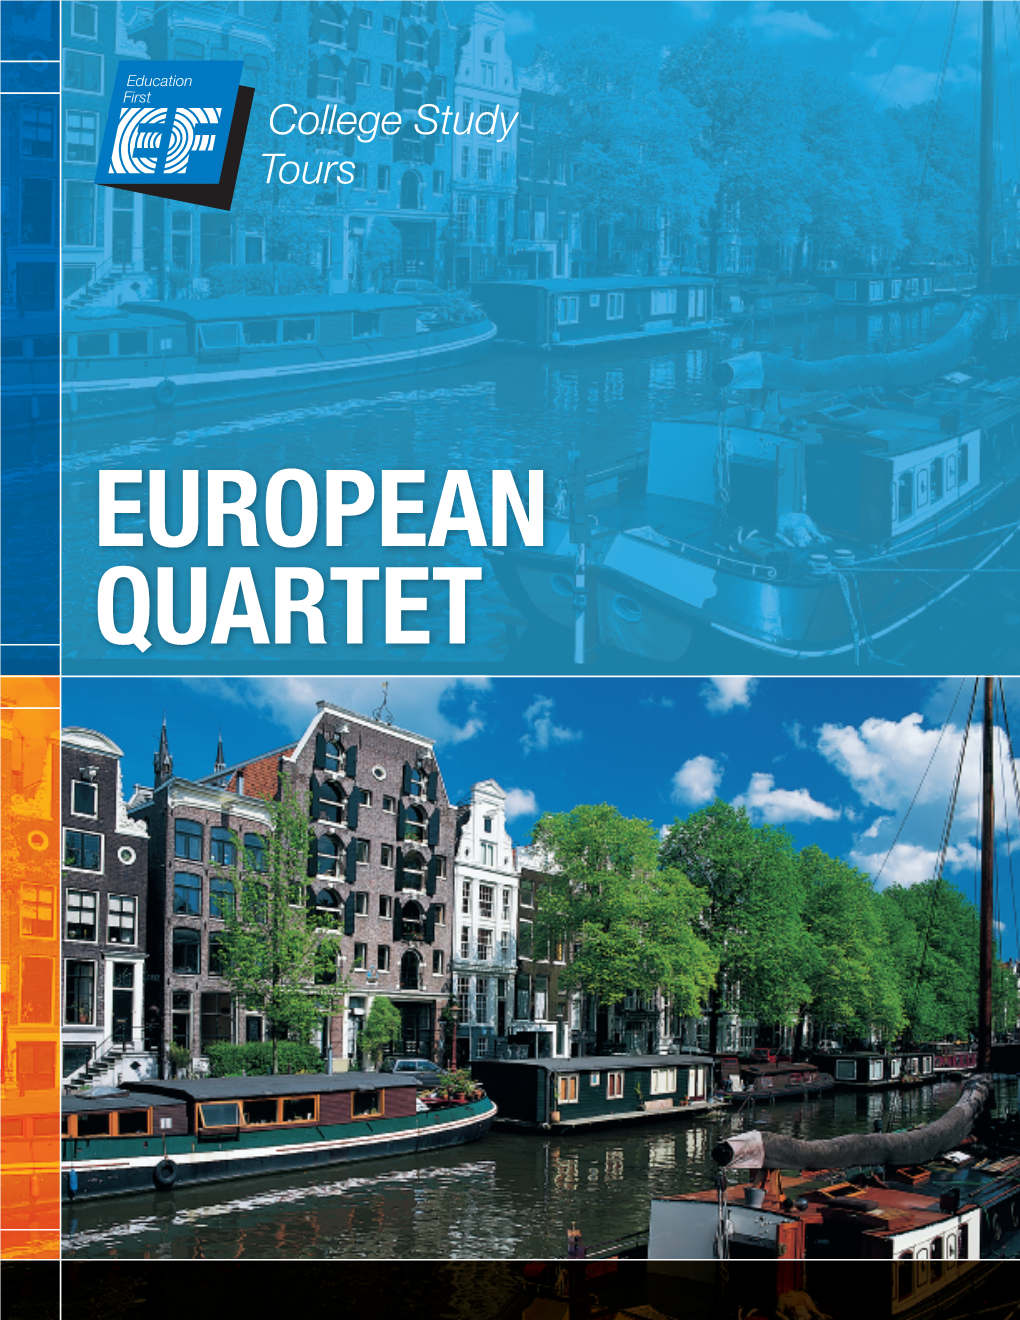 European Quartet European Quartet